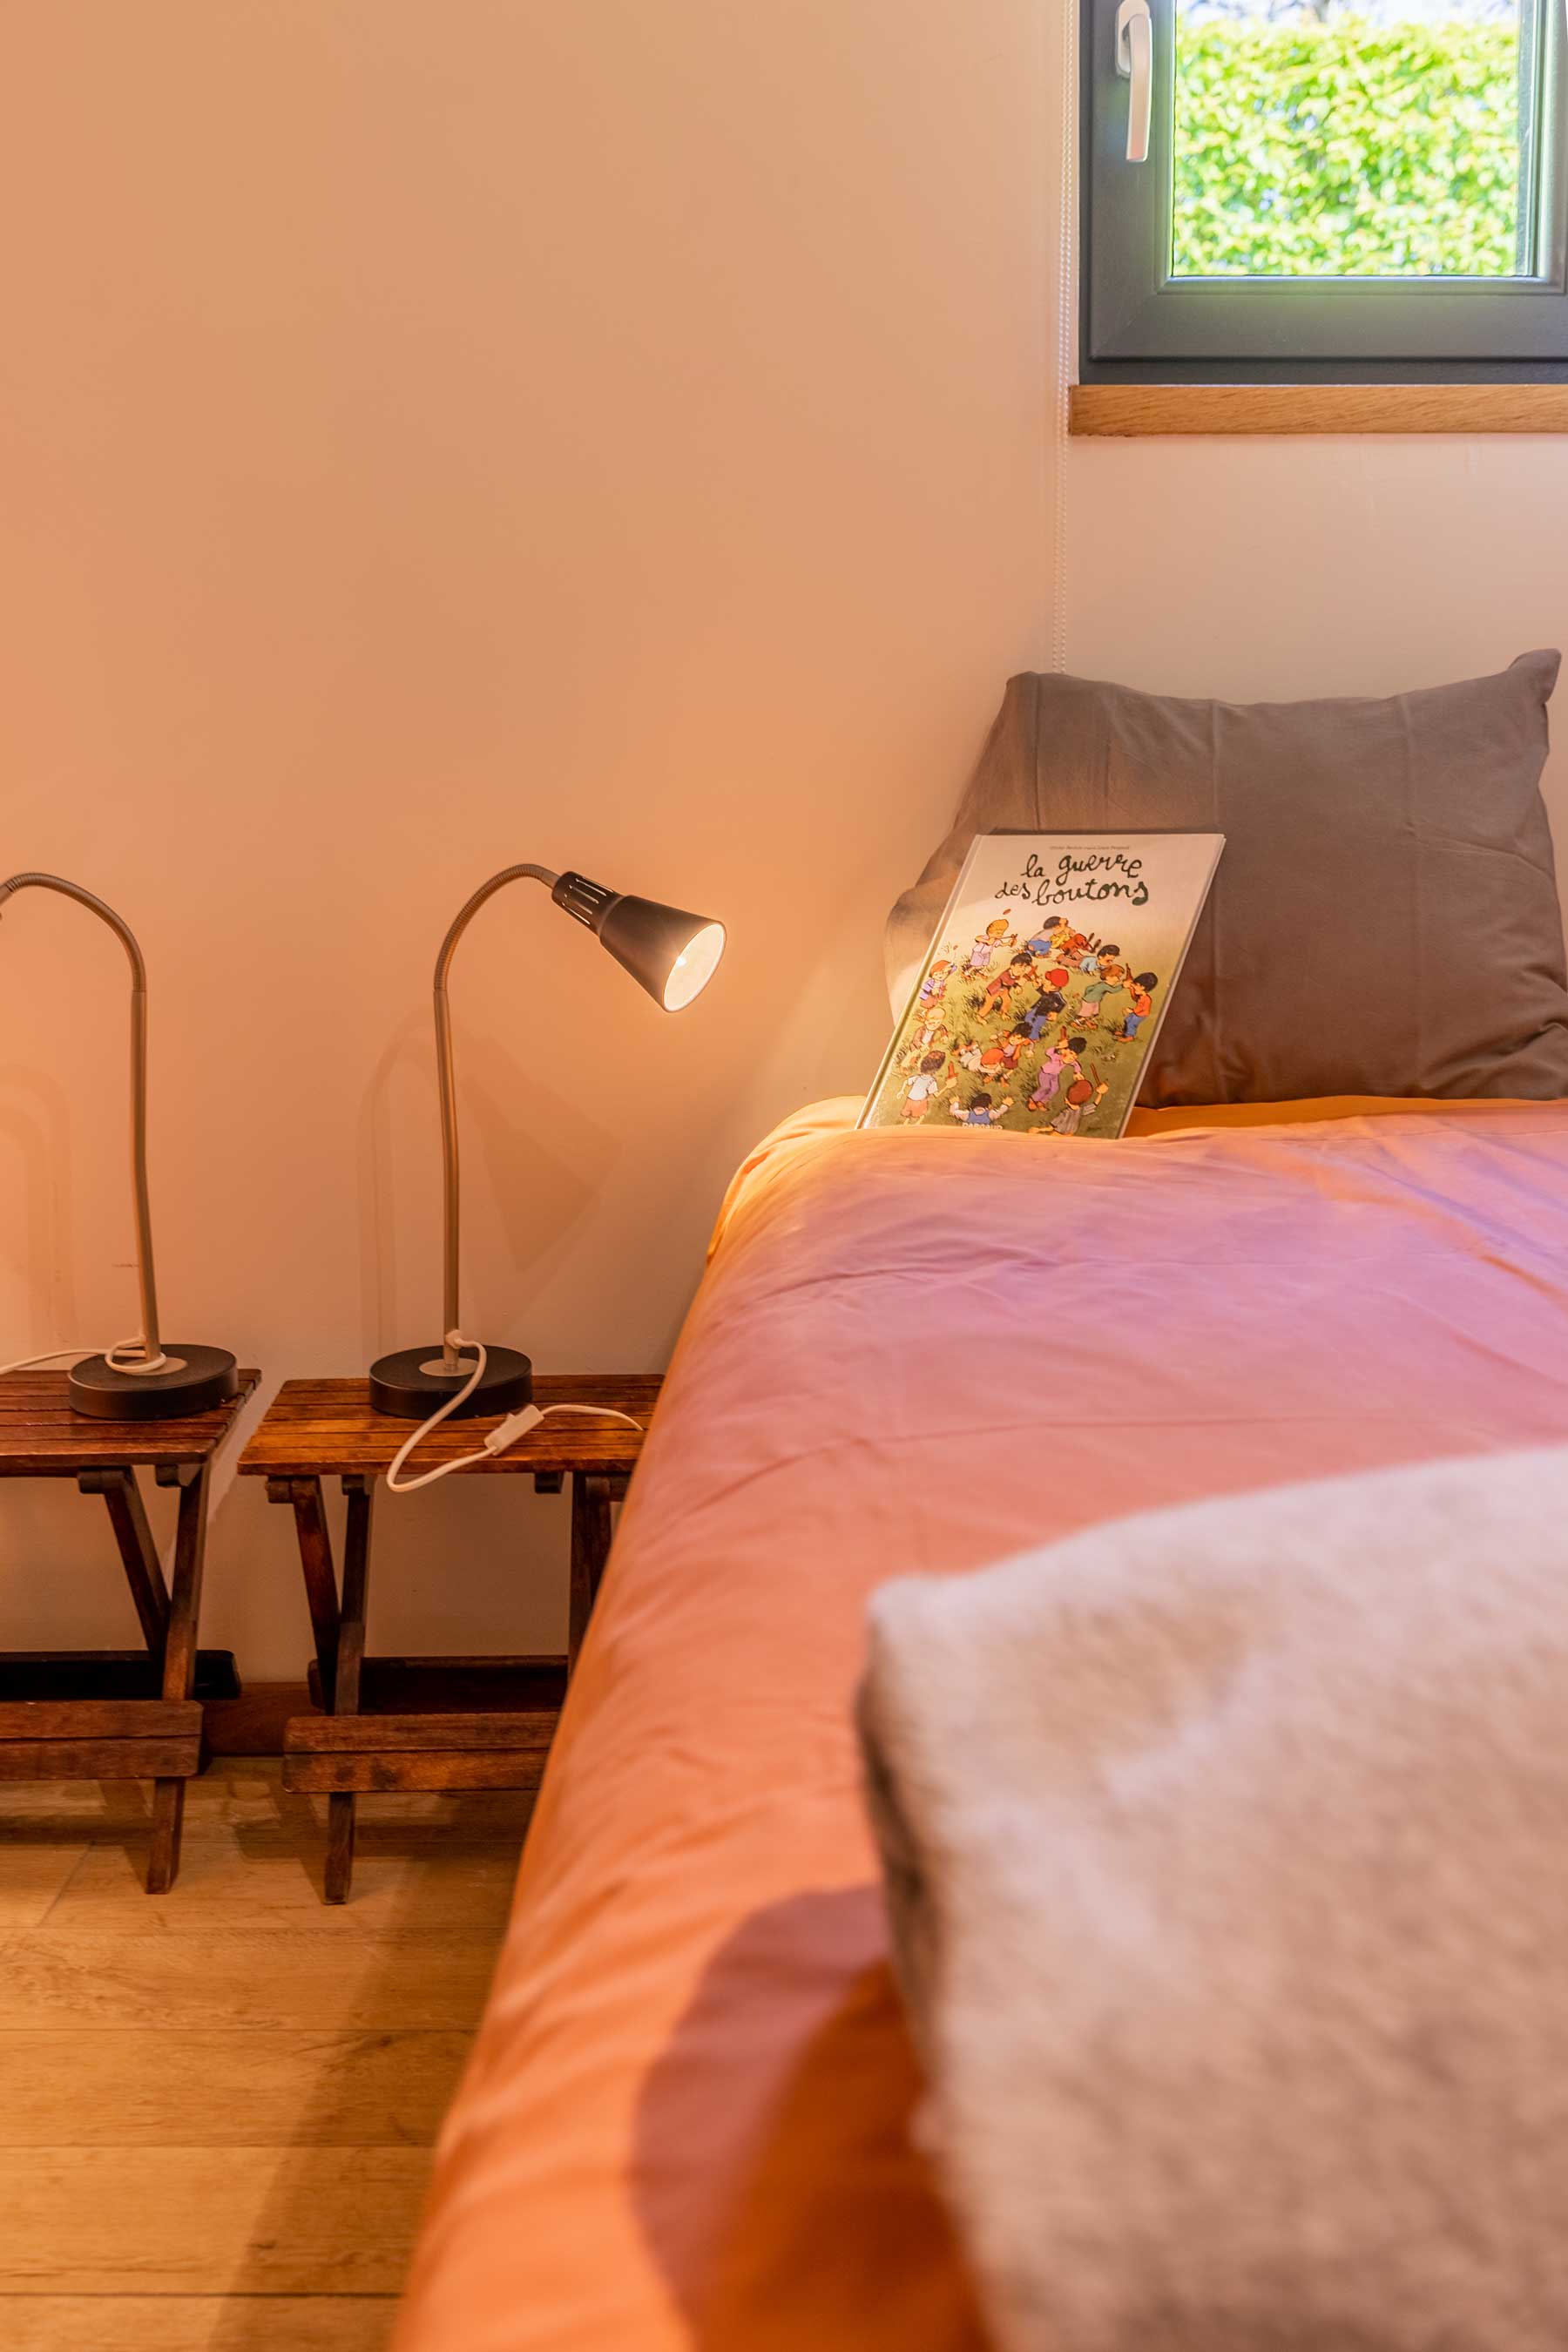 Bed and Bedot | Gîte chaleureux de 4 personnes à Fauvillers en bordure de Fôret d'Anlier - Luxembourg